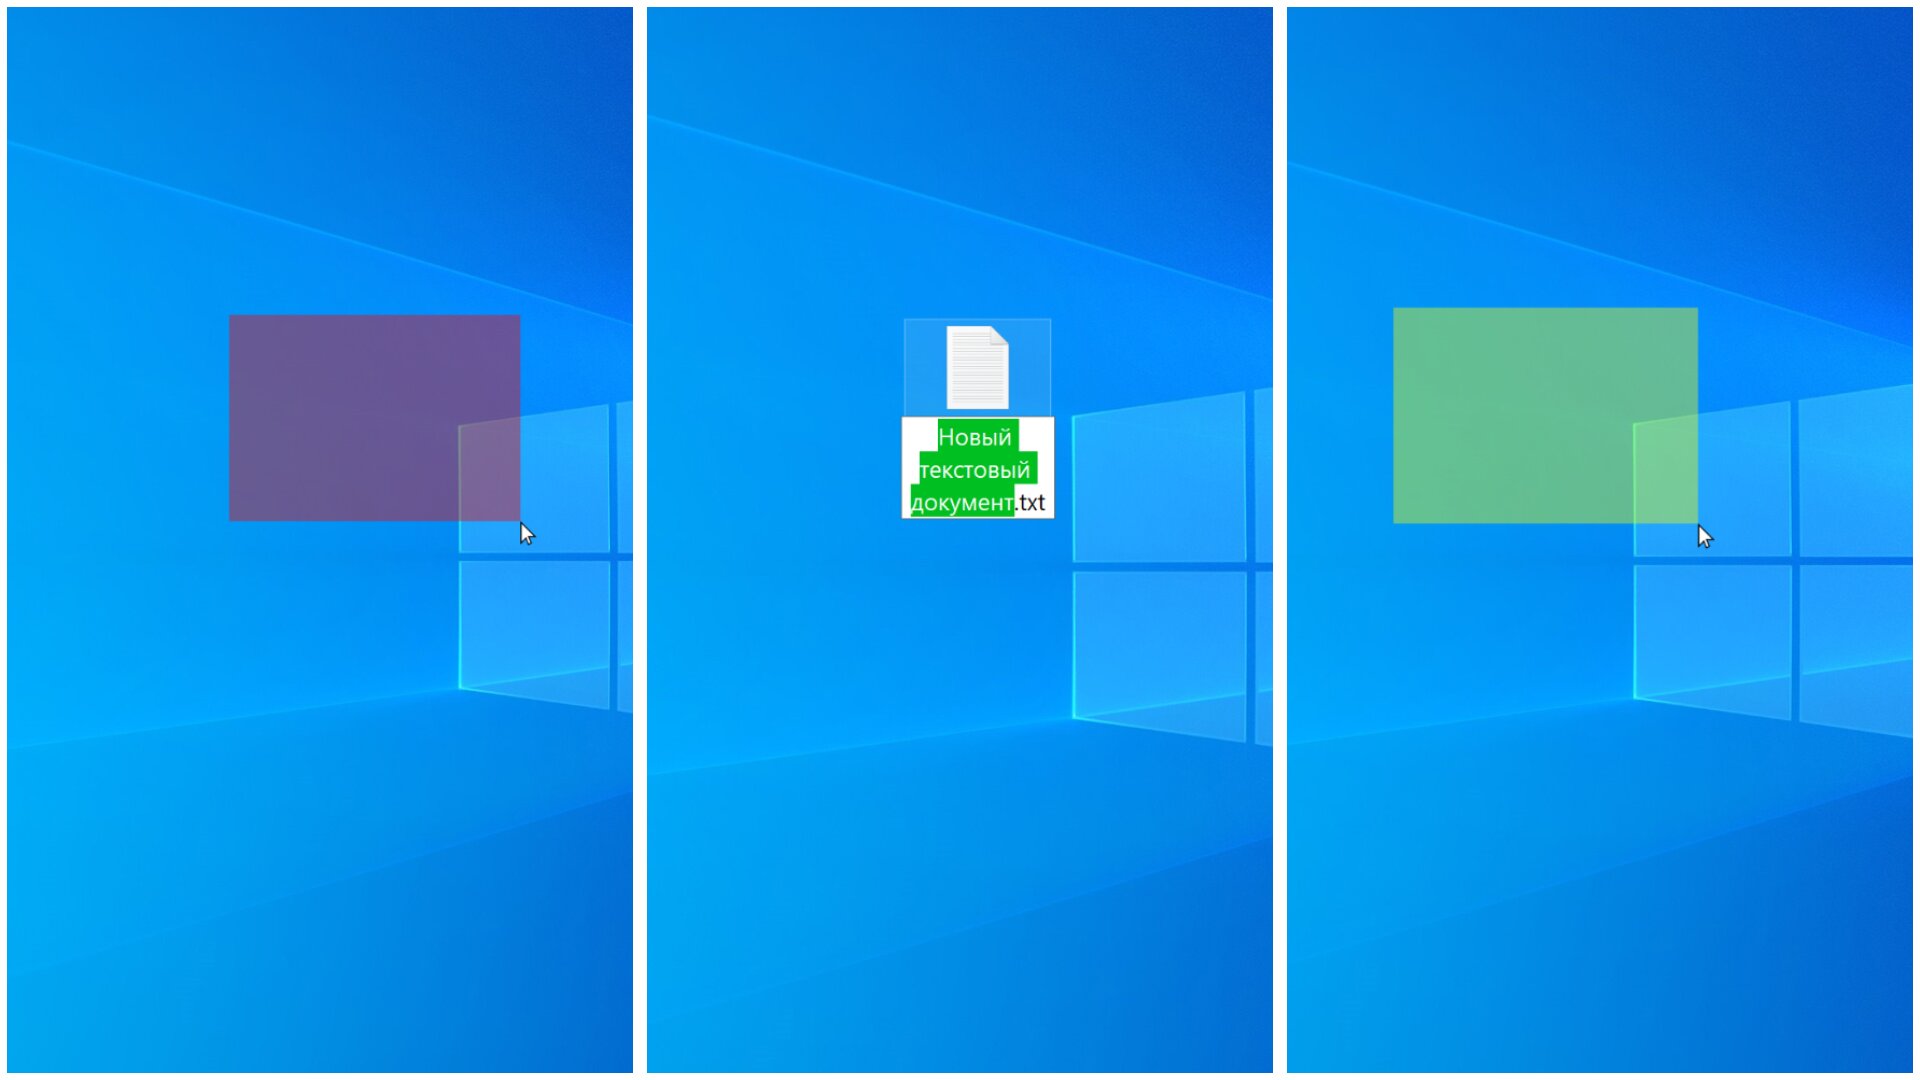 Как поменять цвет темы в windows 7